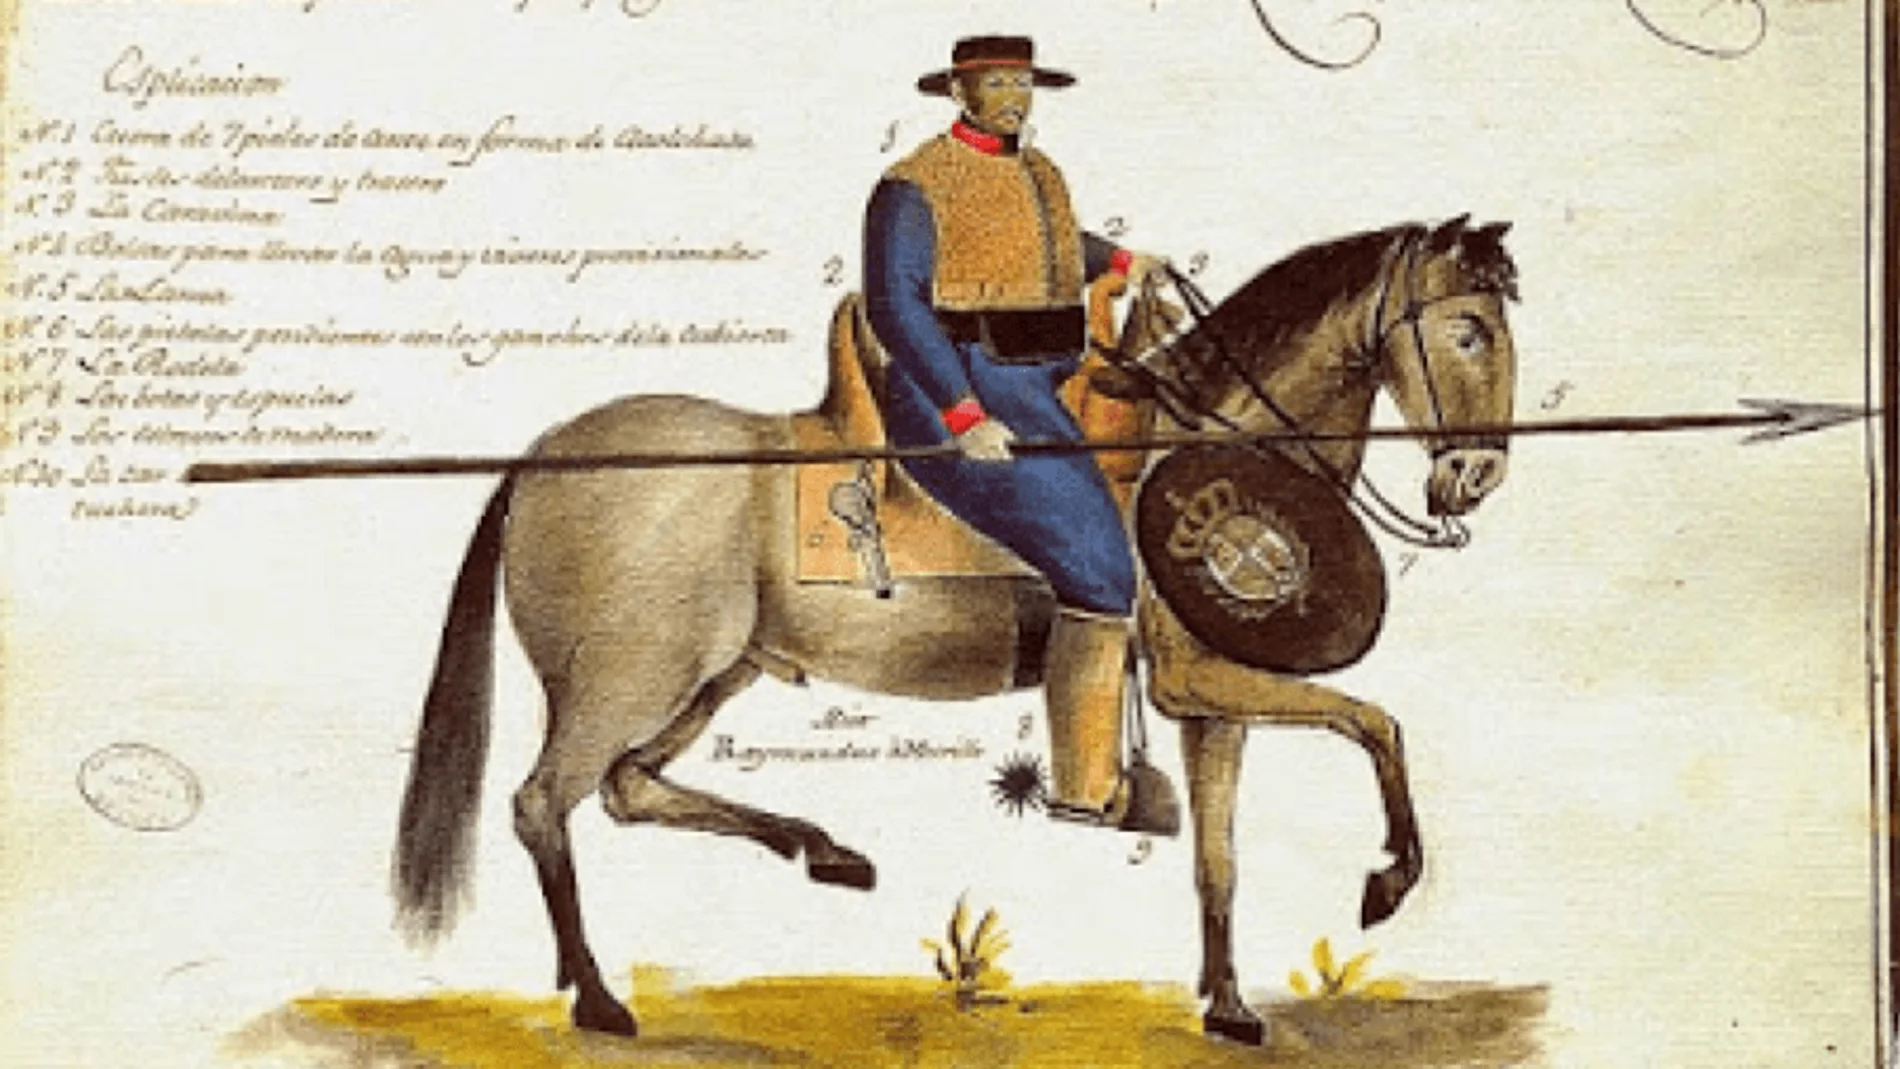 Acuarela de un soldado de cuera español pintada por Raimundo Murillo en 1804